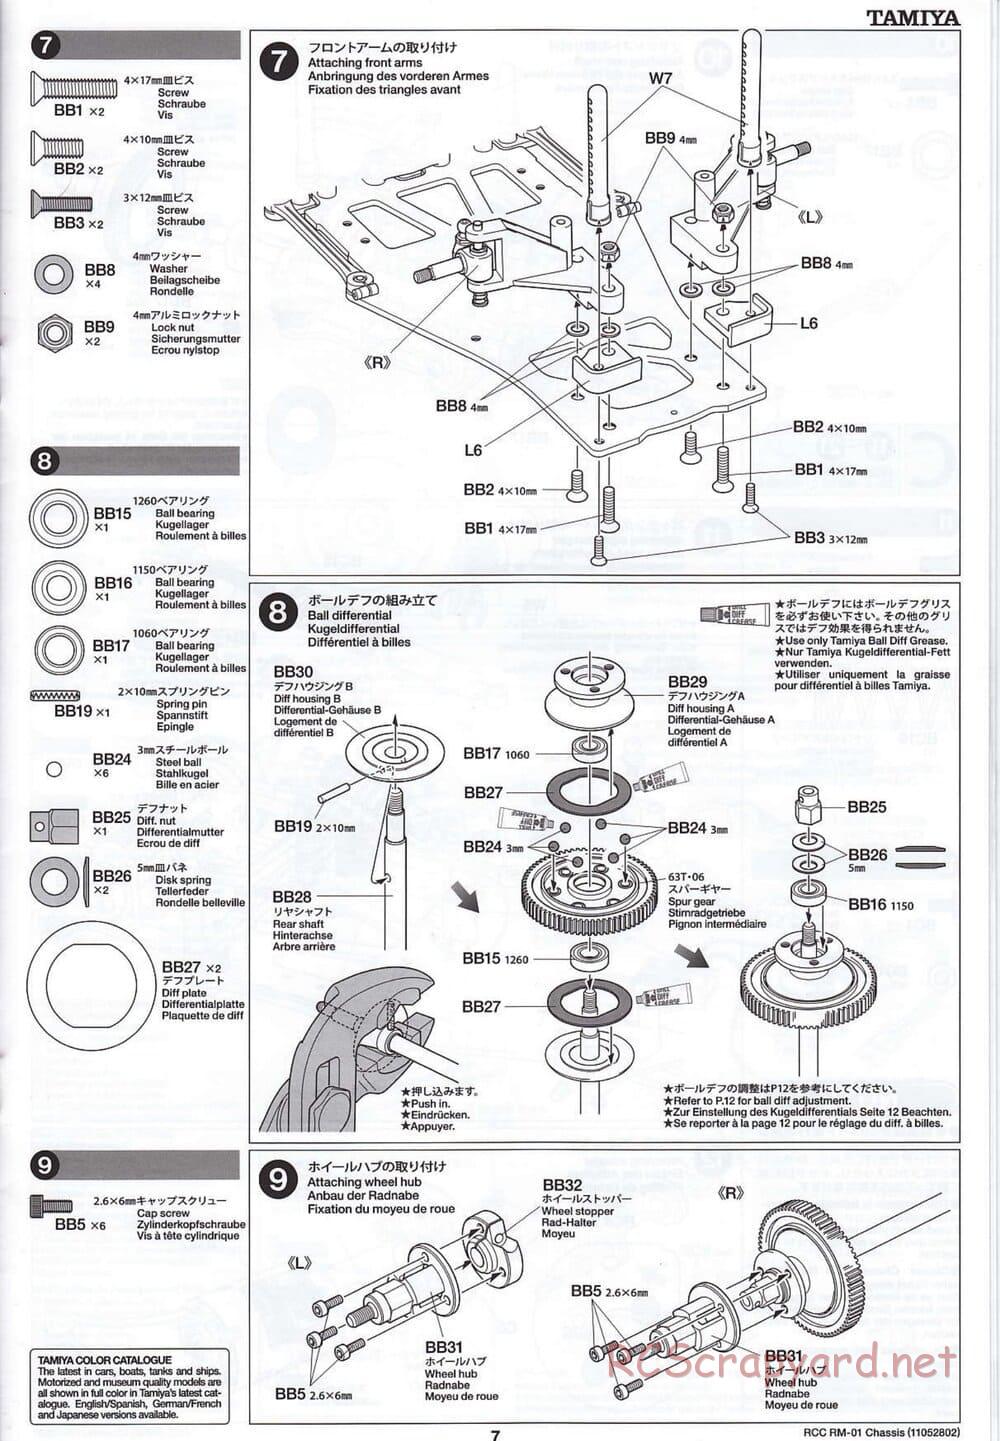 Tamiya - TA04-SS Chassis - Manual - Page 7